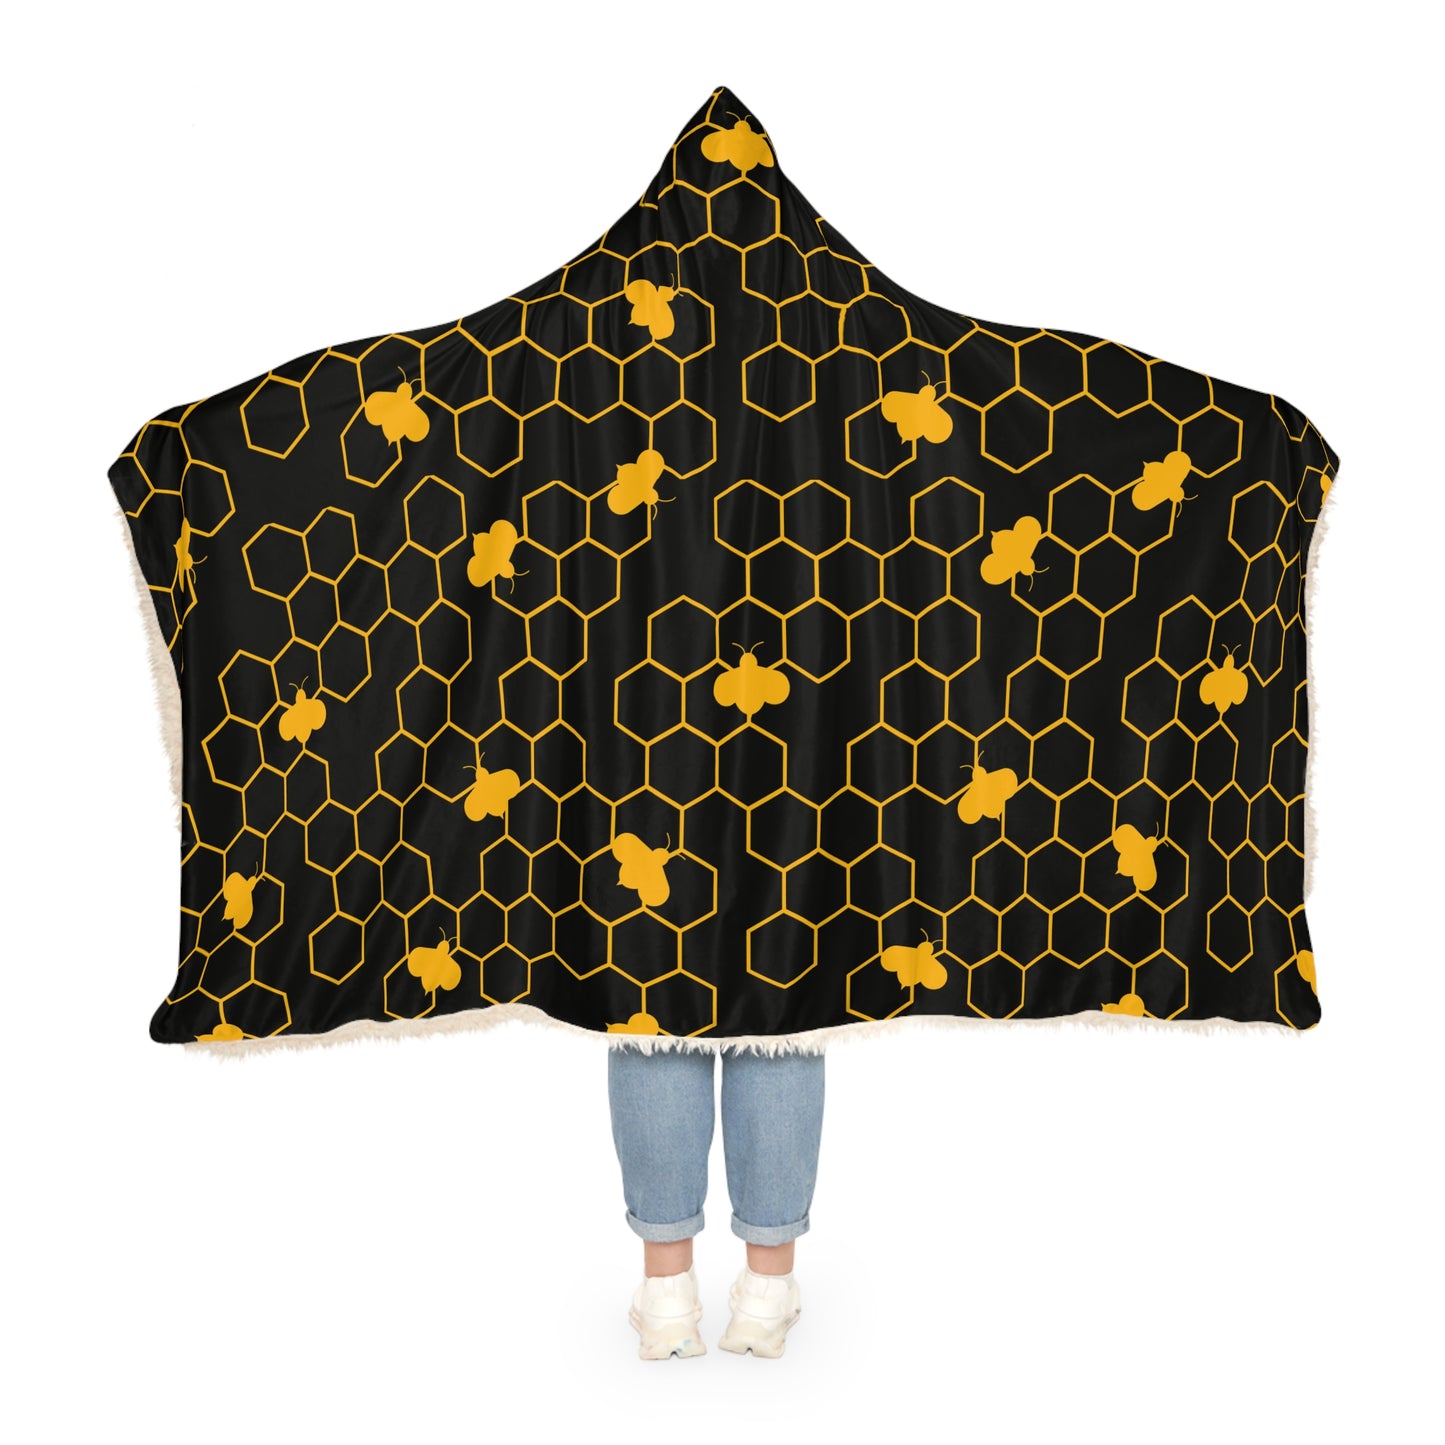 Beehive Hooded Snuggle Blanket